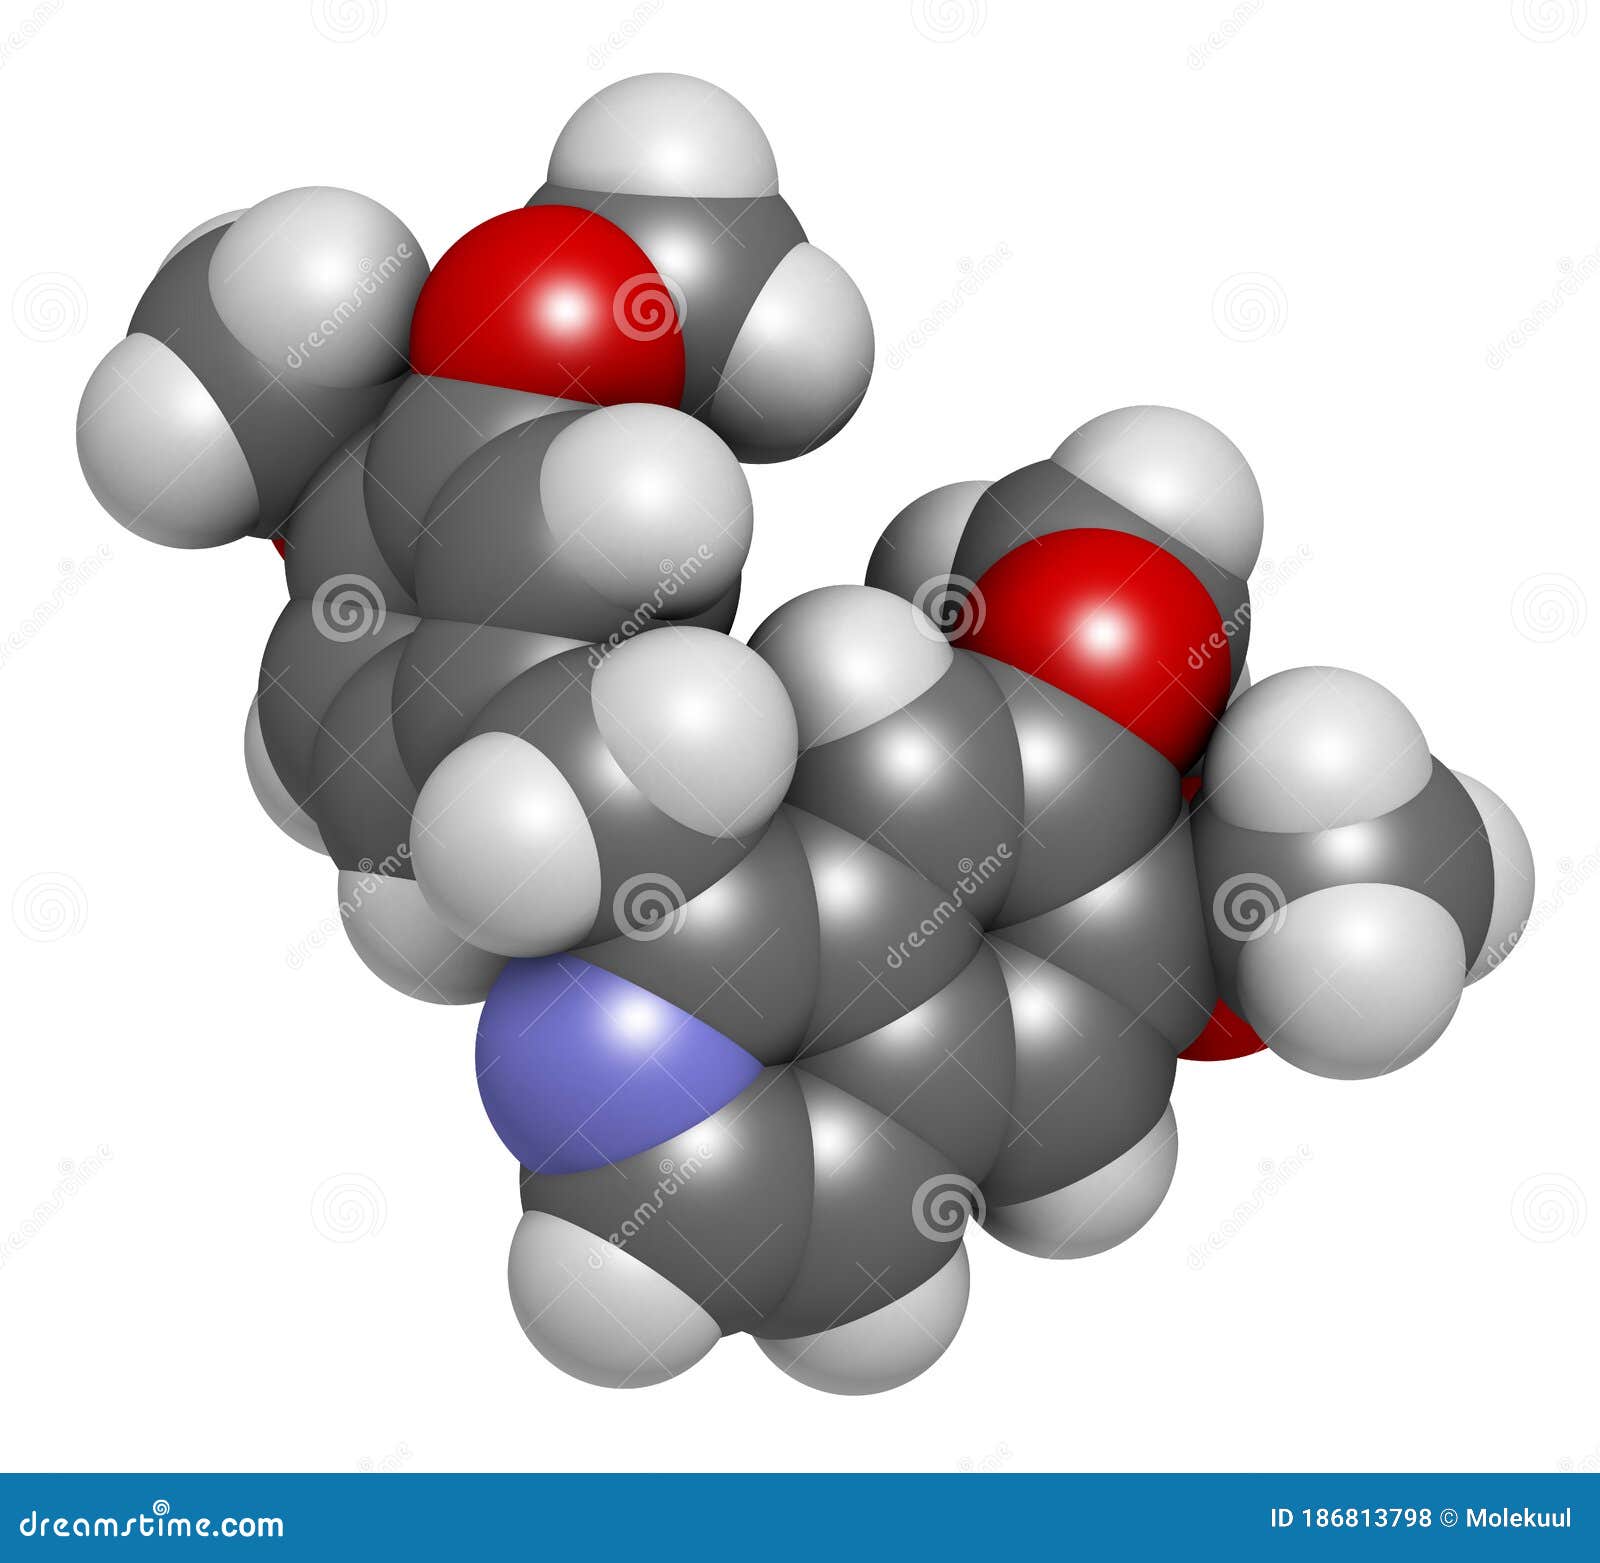 papaverine opium alkaloid molecule. used as antispasmodic drug. 3d rendering. atoms are represented as spheres with conventional